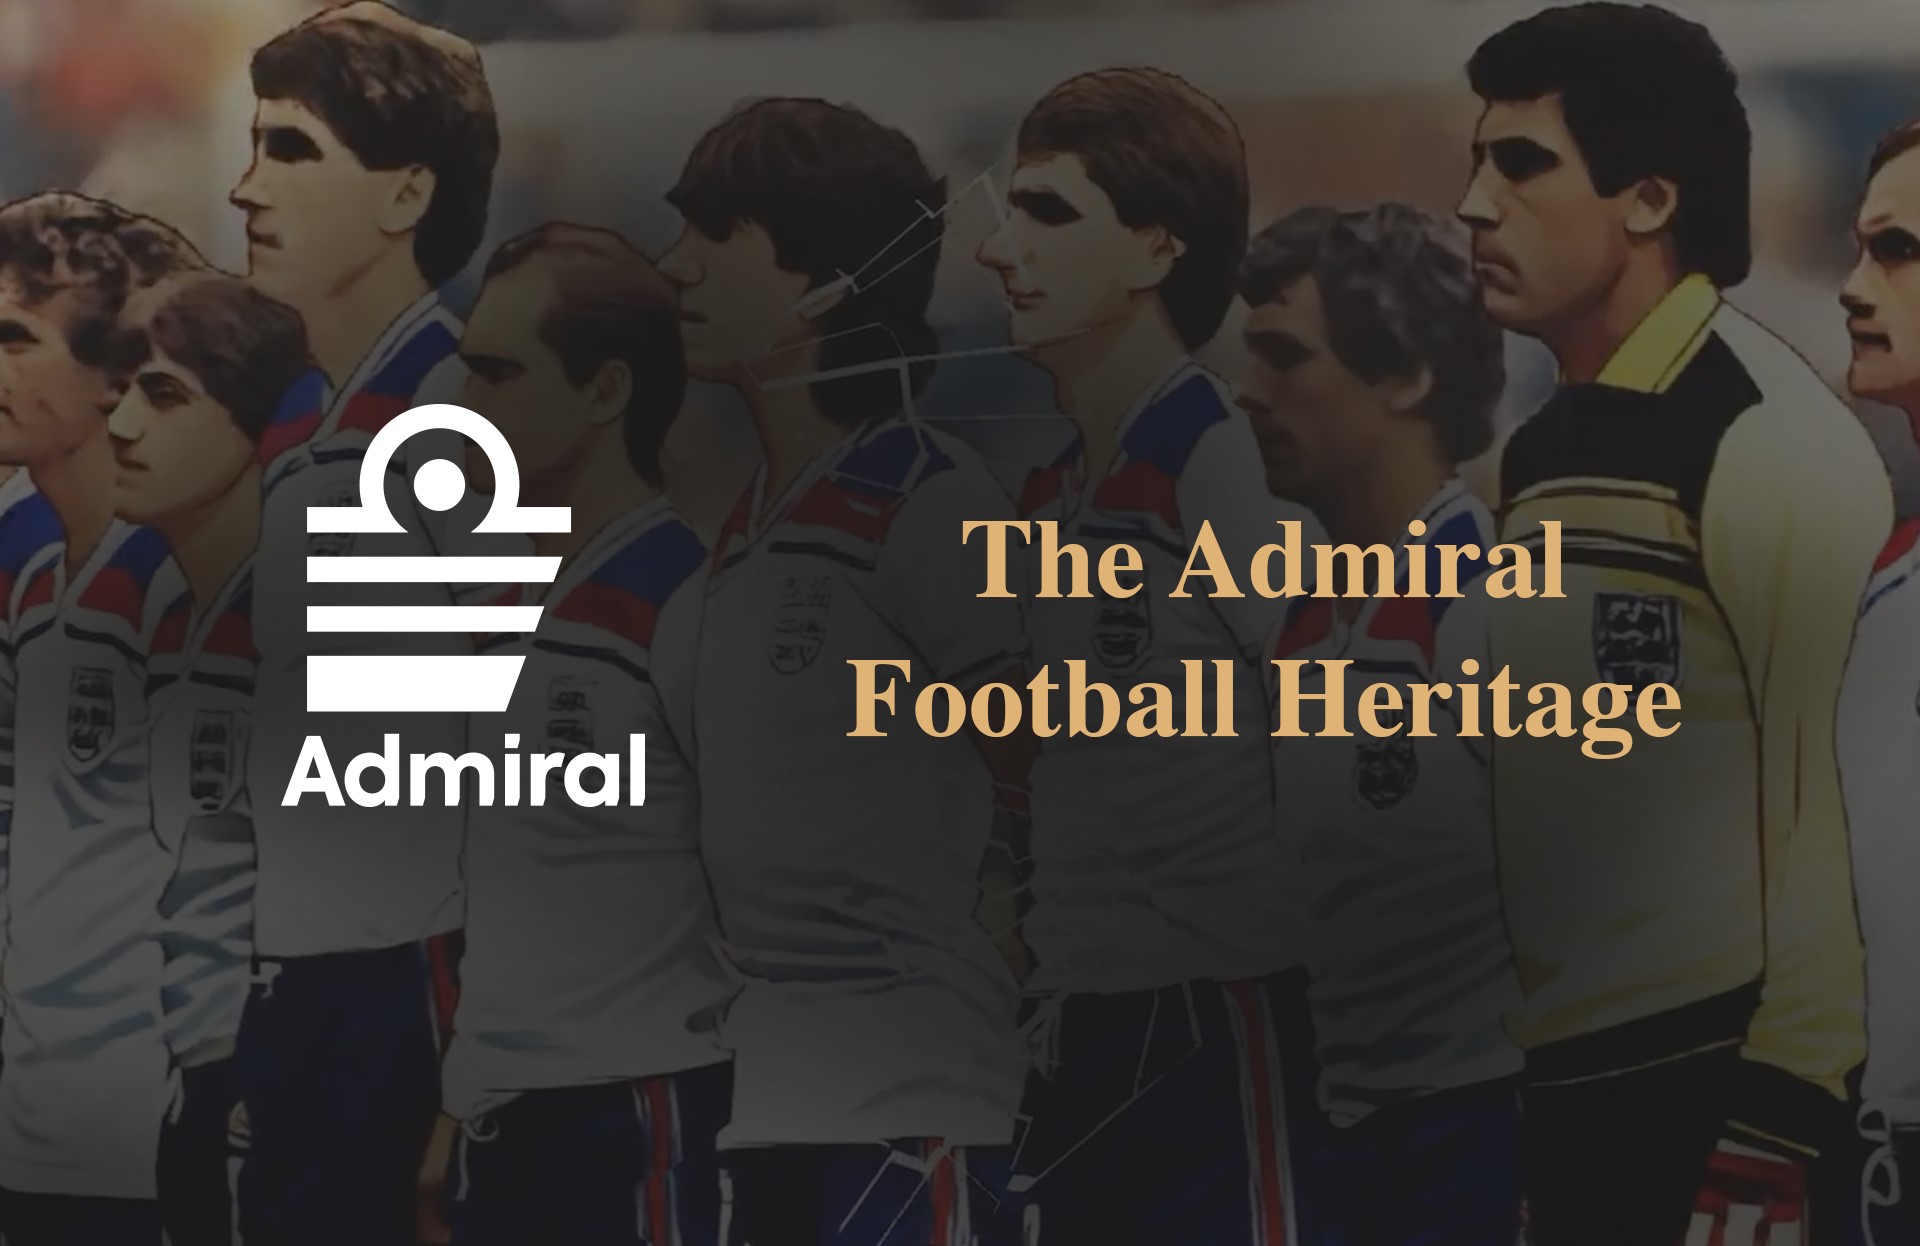 The Admiral Football Heritage: Μια ιστορία 50 και πλέον ετών στο ποδόσφαιρο